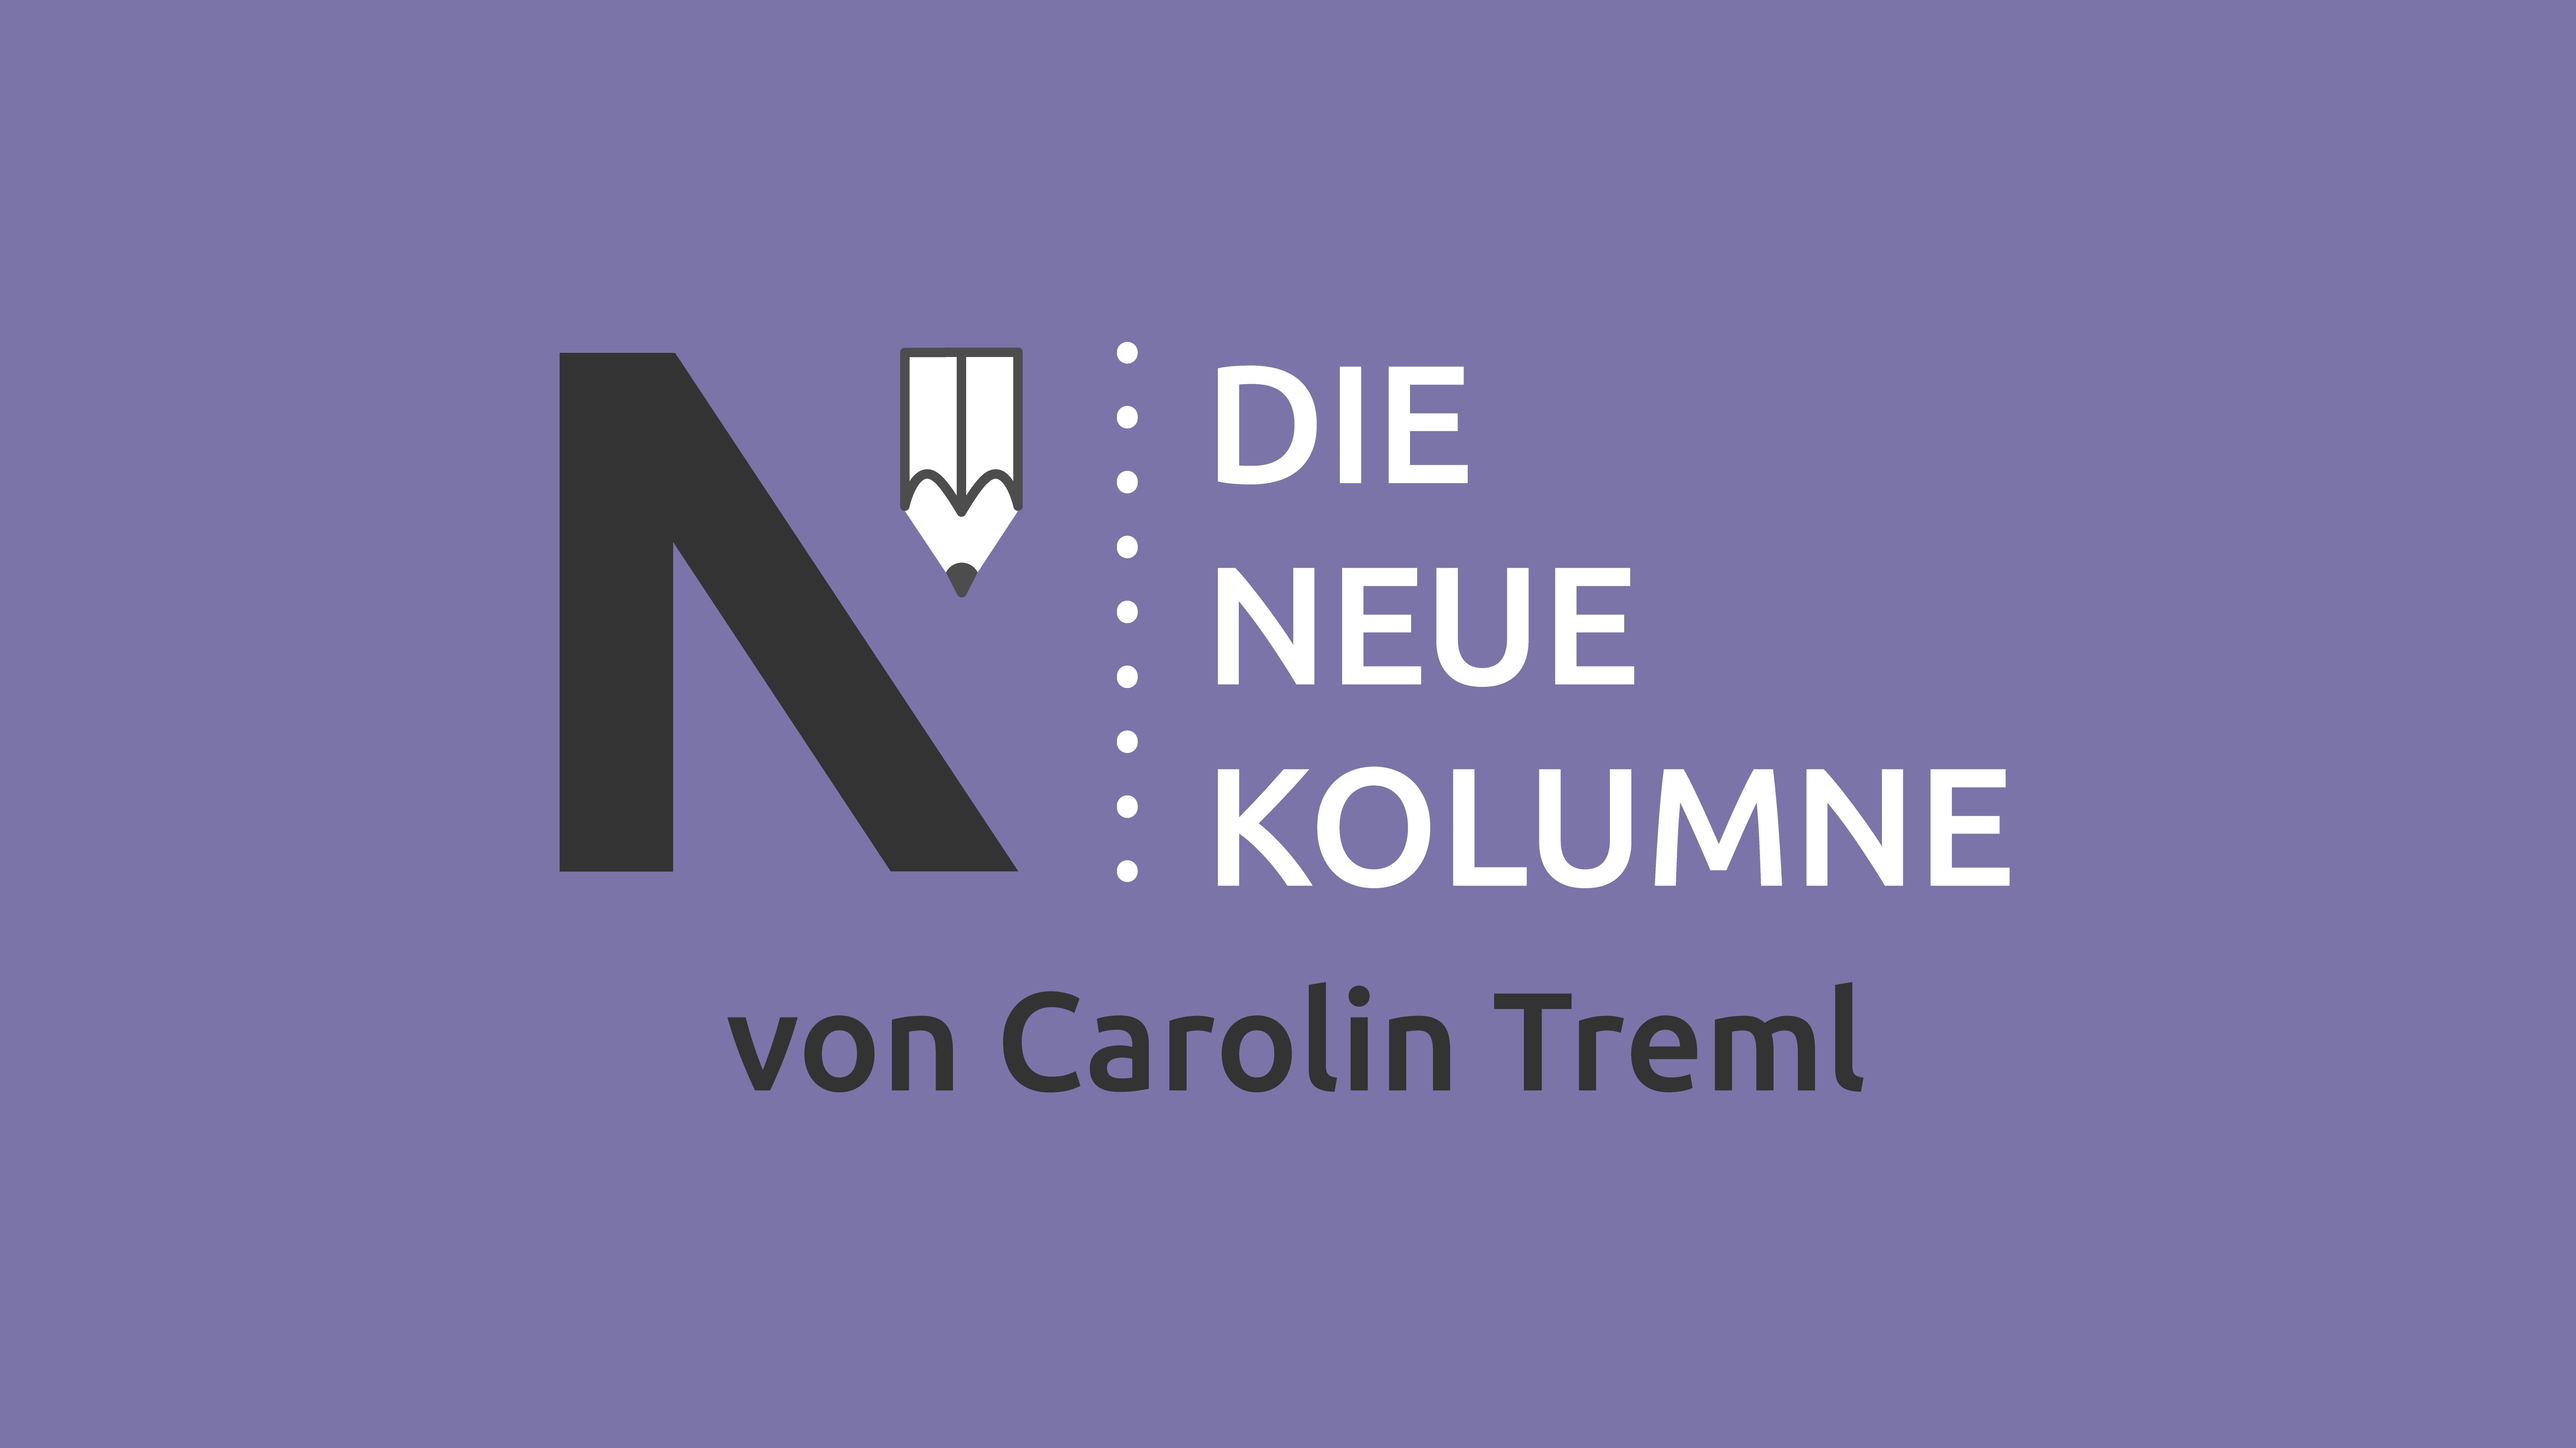 Das Logo von Die Neue Norm auf violett-farbenen Grund. Rechts davon steht: Die Neue Kolumne. Unten steht: von Carolin Treml.